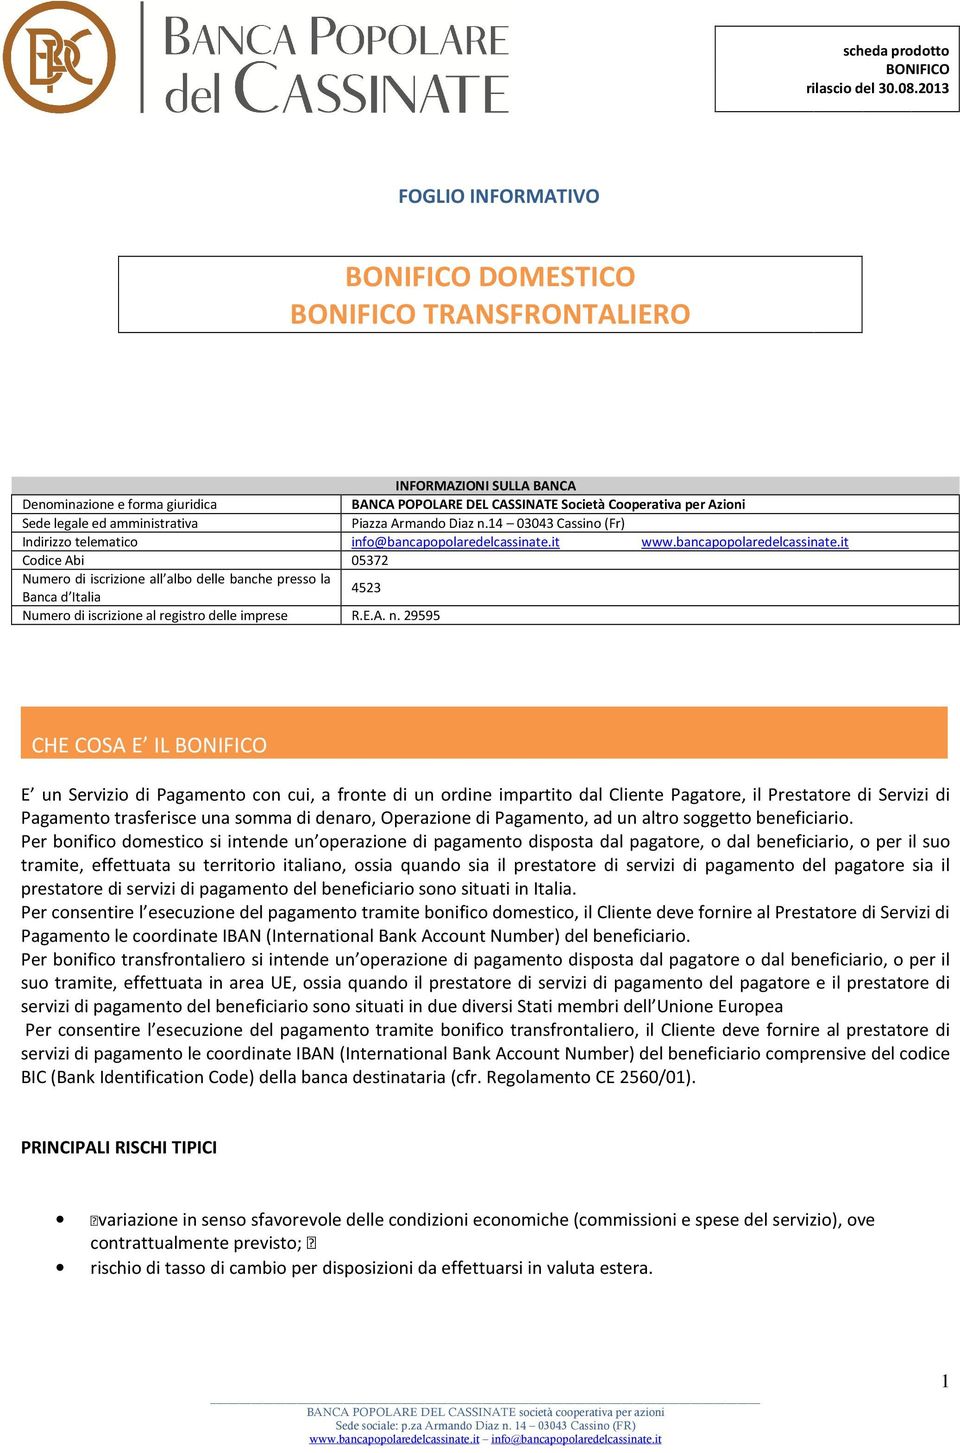 ed amministrativa Piazza Armando Diaz n.14 03043 Cassino (Fr) Indirizzo telematico info@bancapopolaredelcassinate.